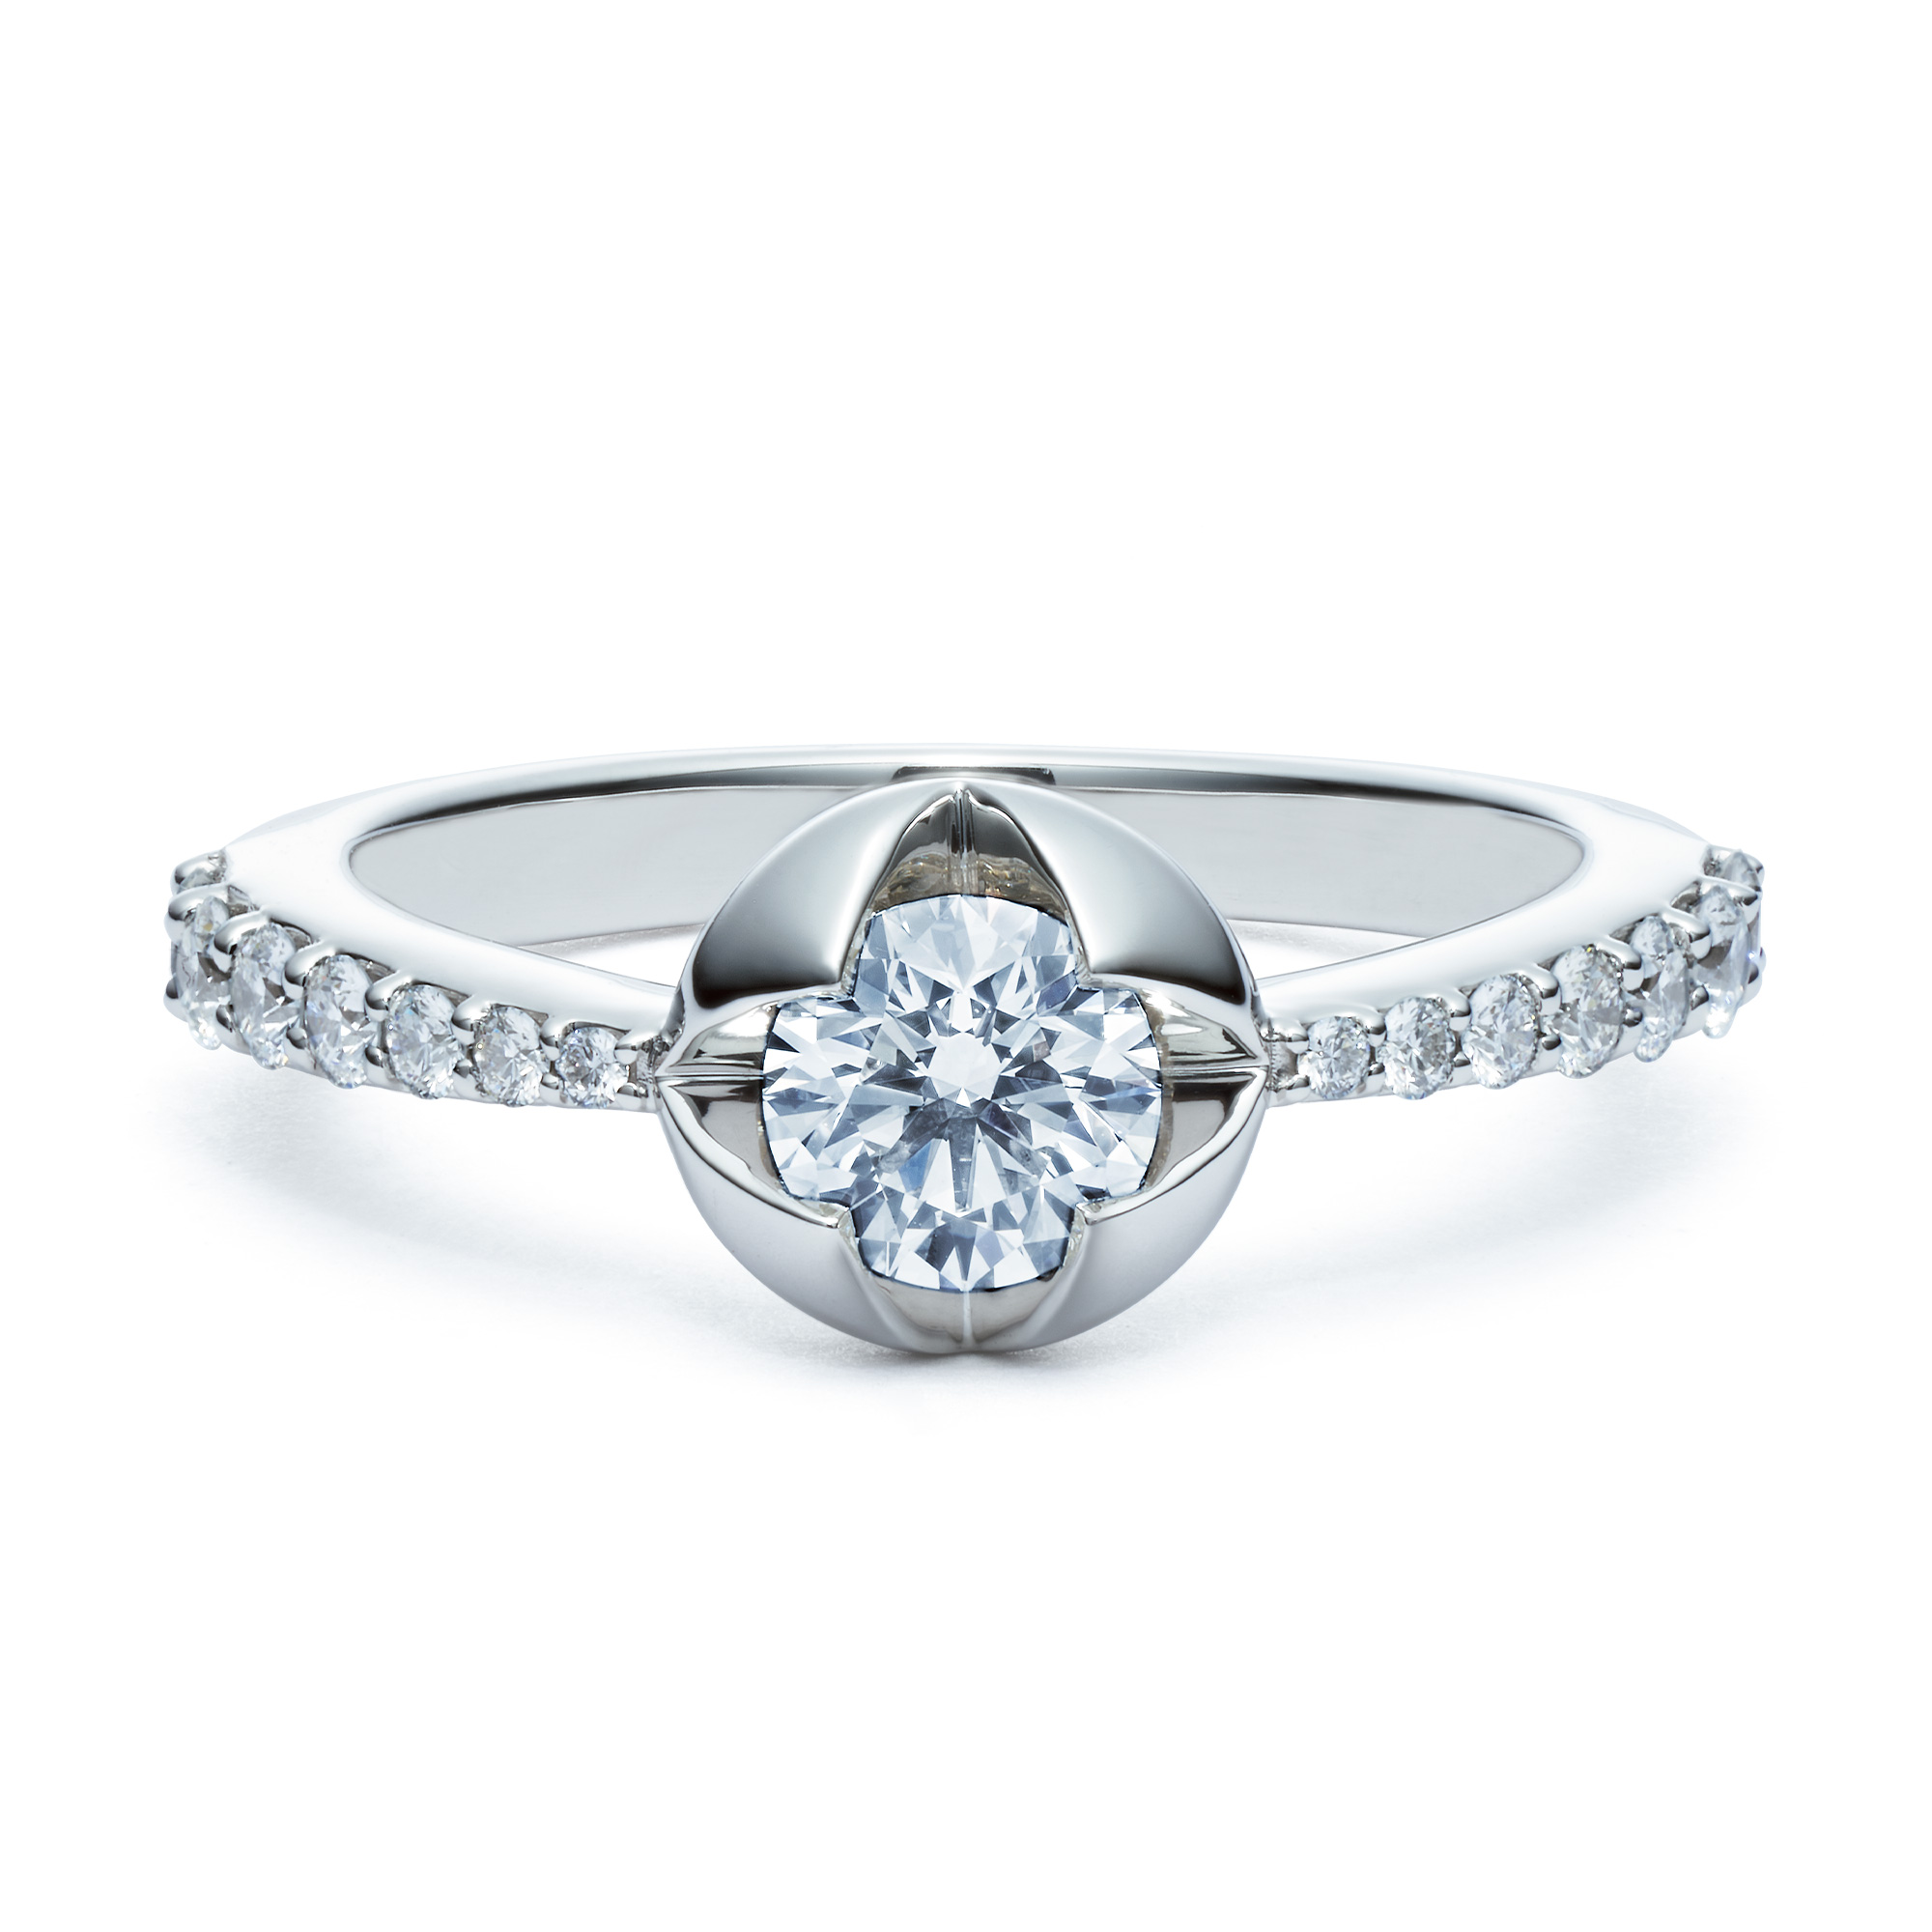 ブライダルリング一覧 | 婚約指輪・結婚指輪なら銀座・和光ブライダル ...